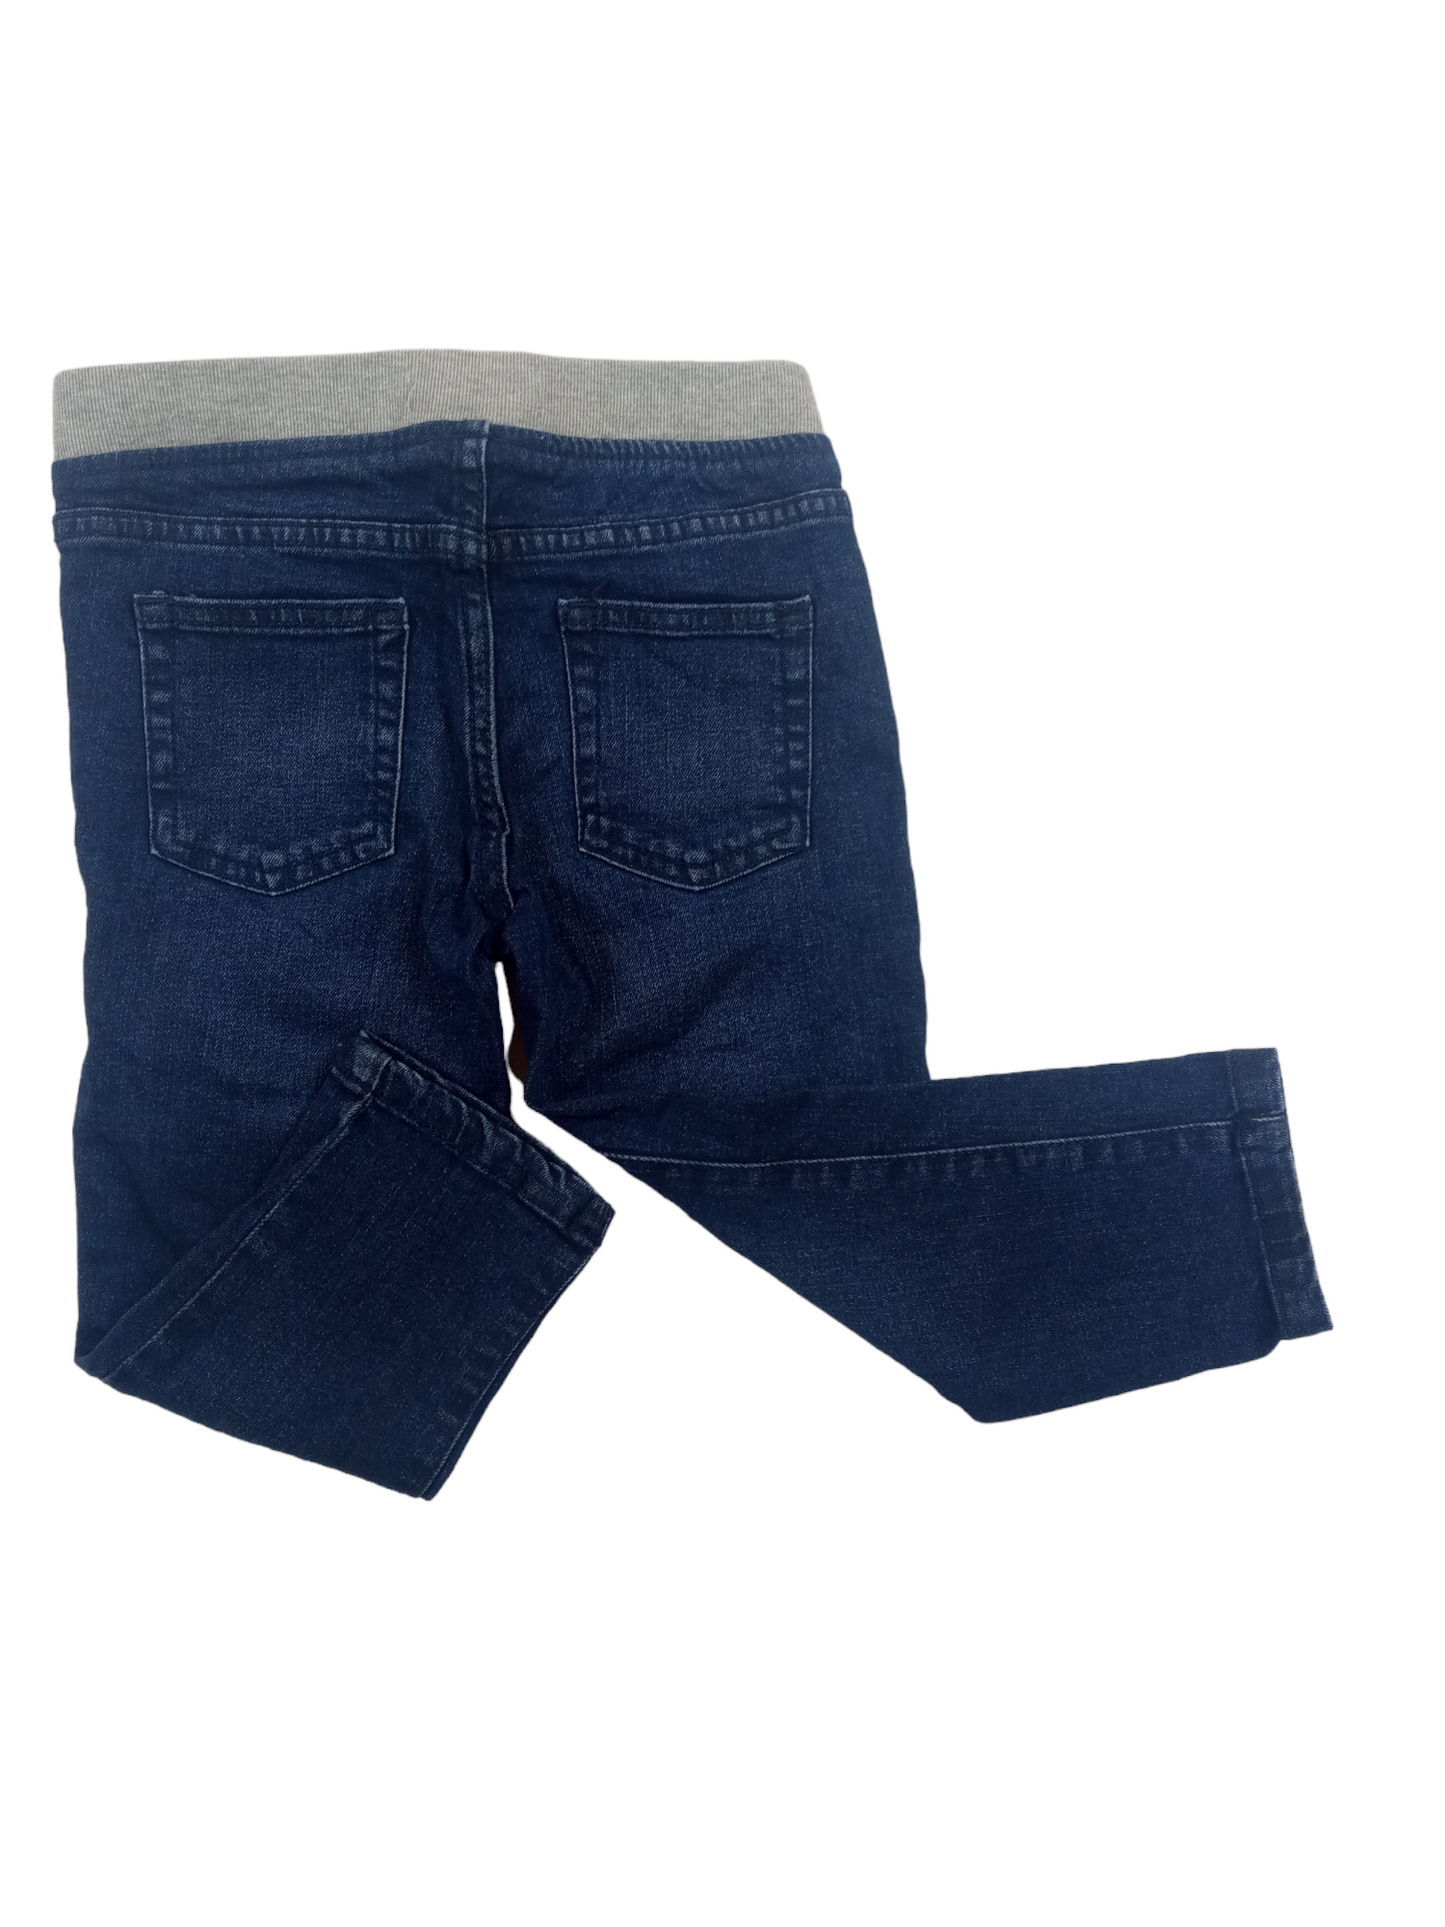 Pantalón jeans / 18-24 meses